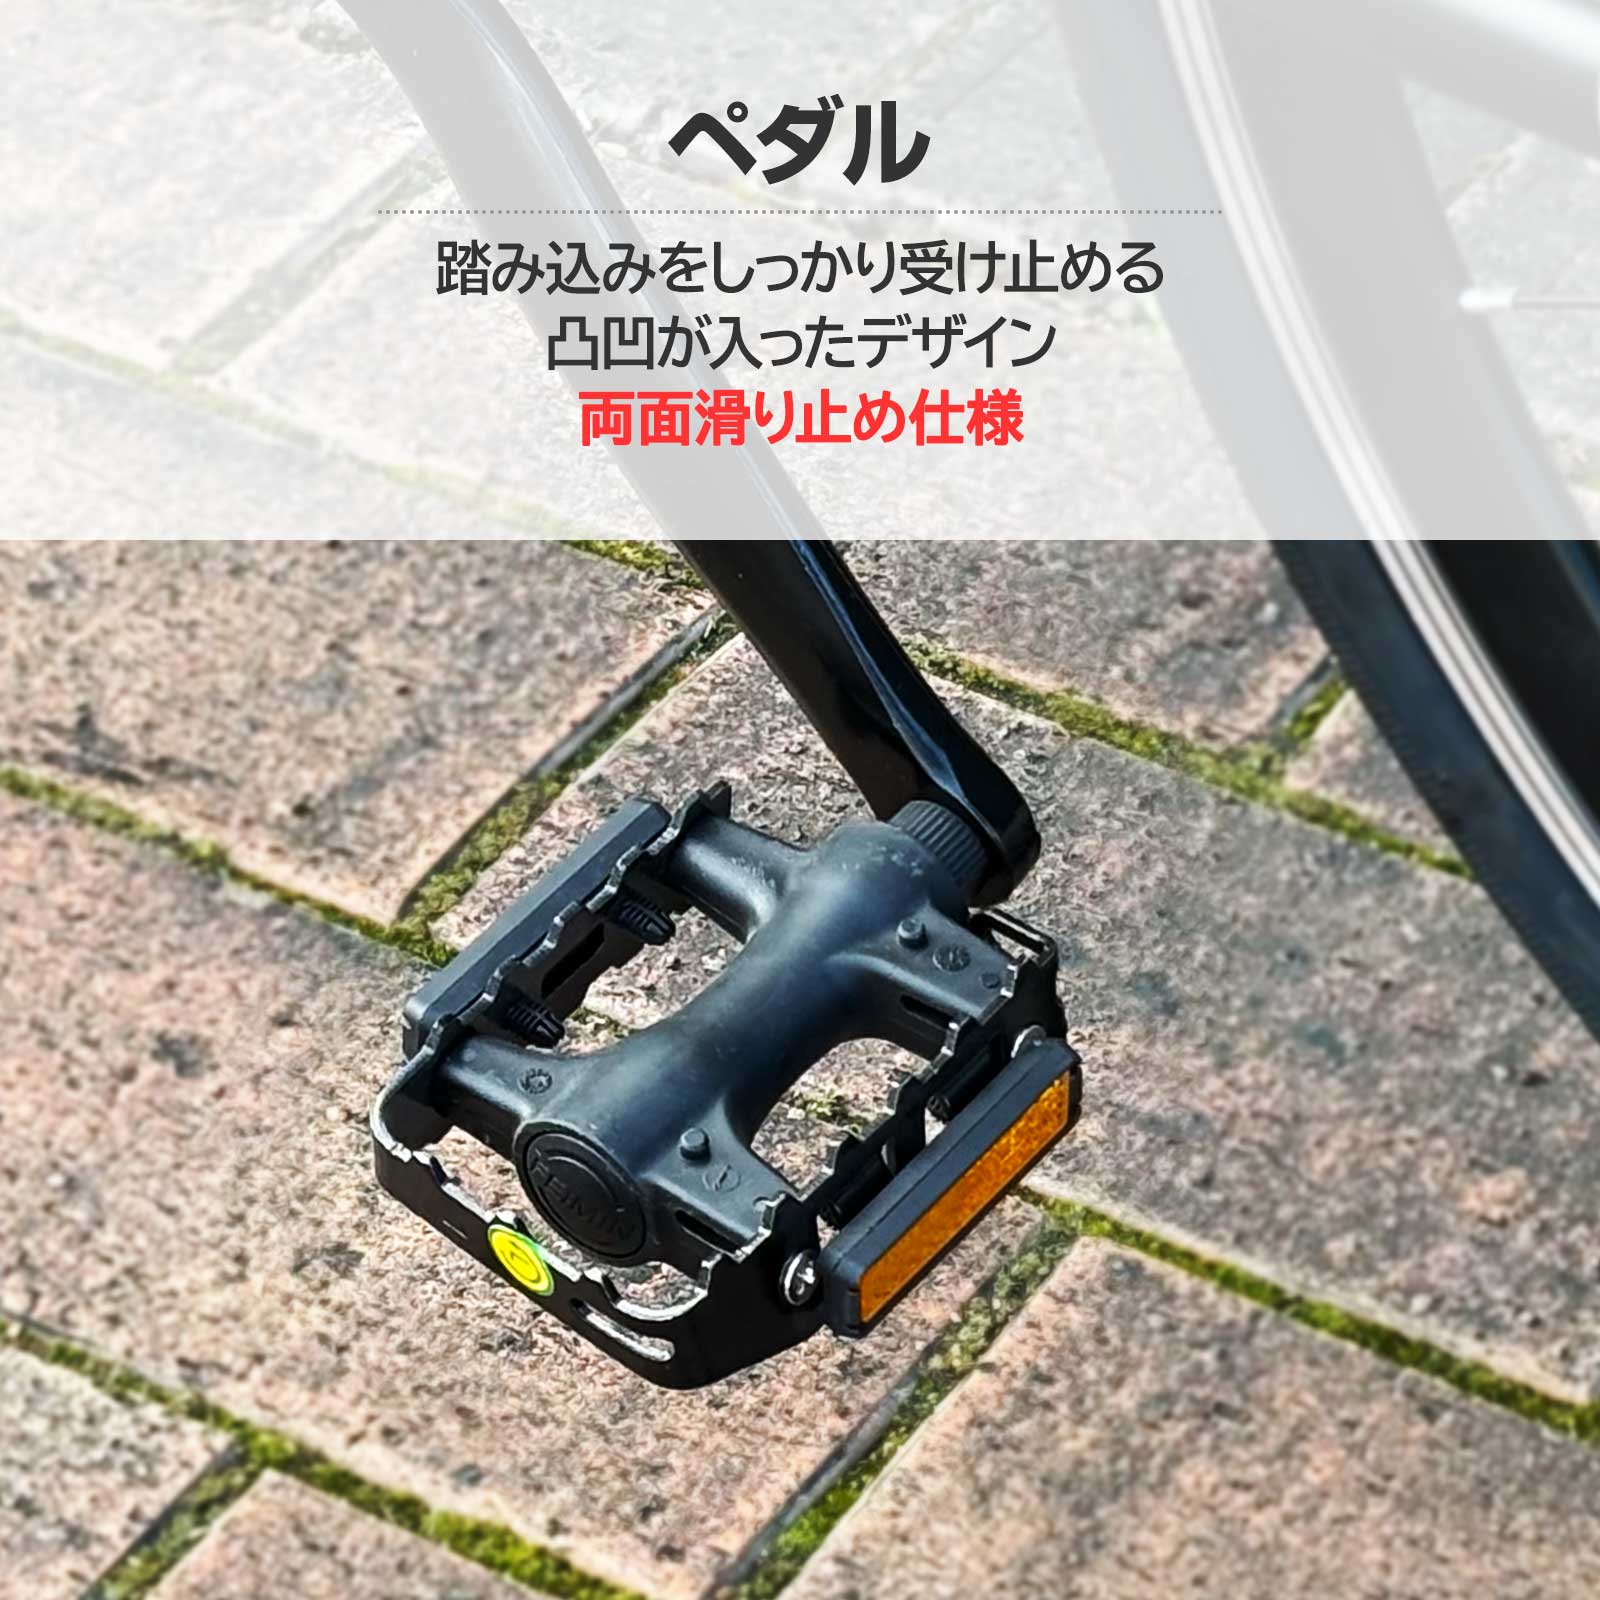 クロスバイク シマノ製 21段変速 自転車 700C 700×28c XC-008 予約販売 